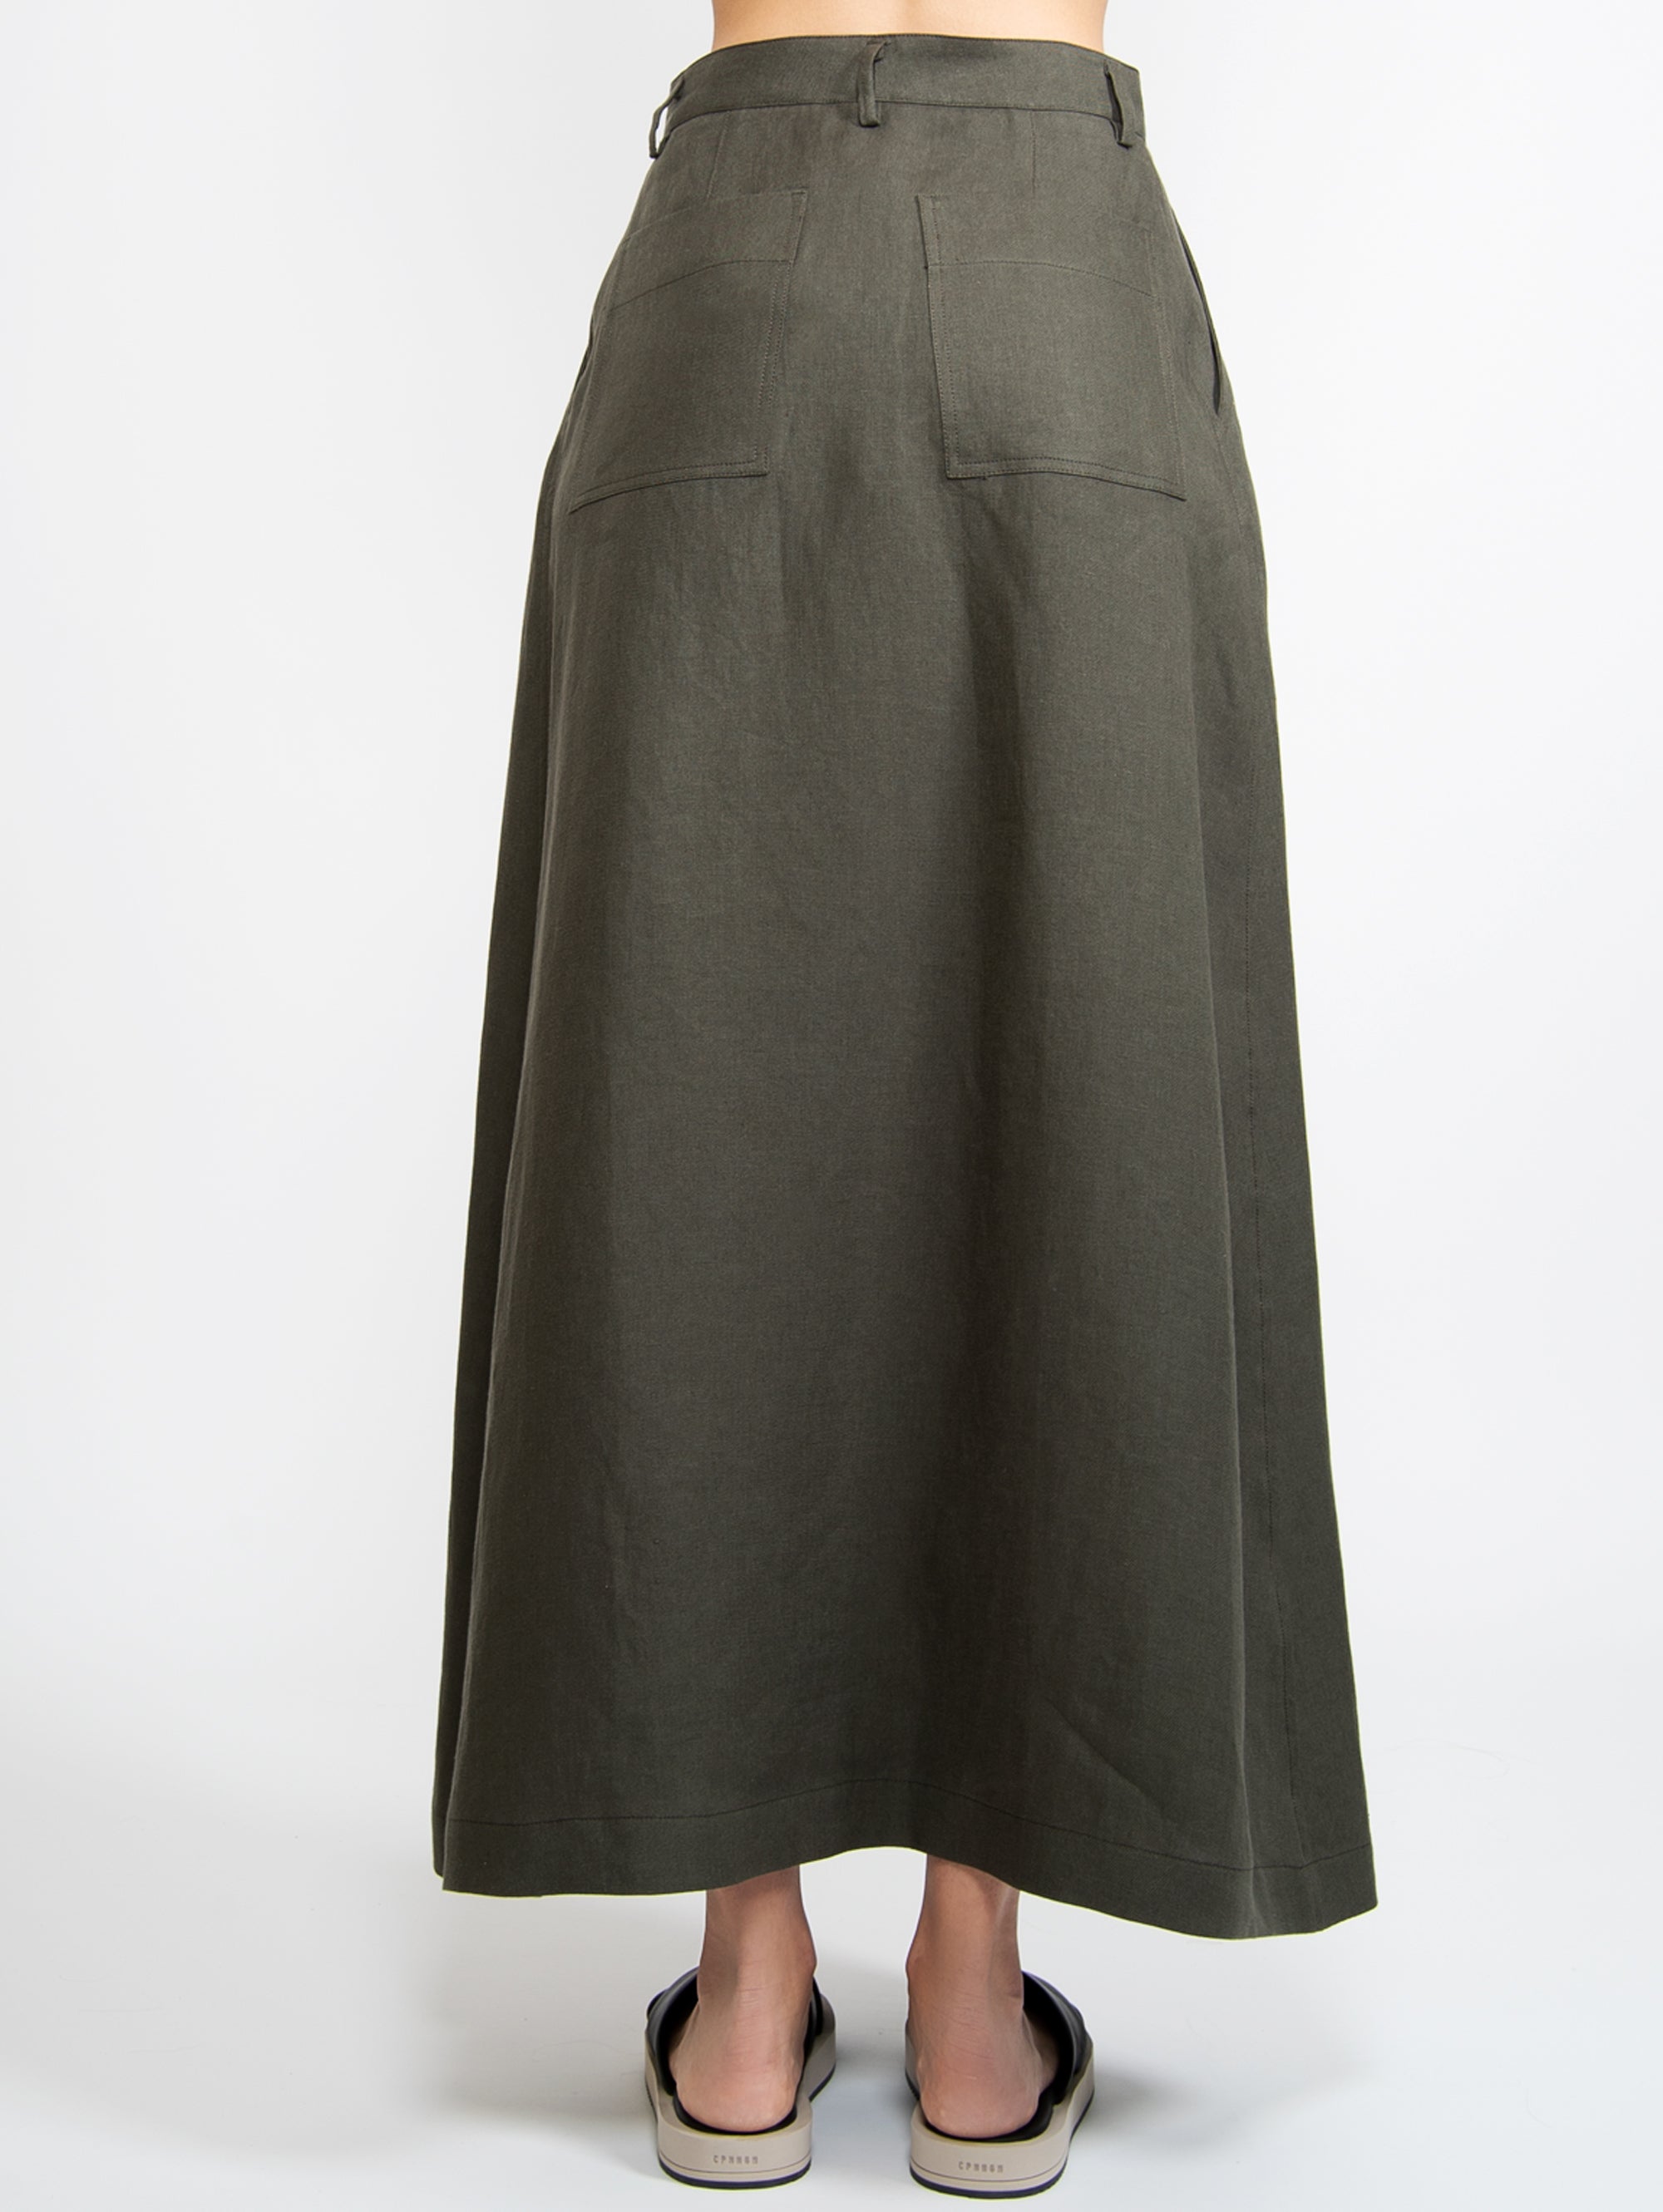 Long Skirt in Green Linen